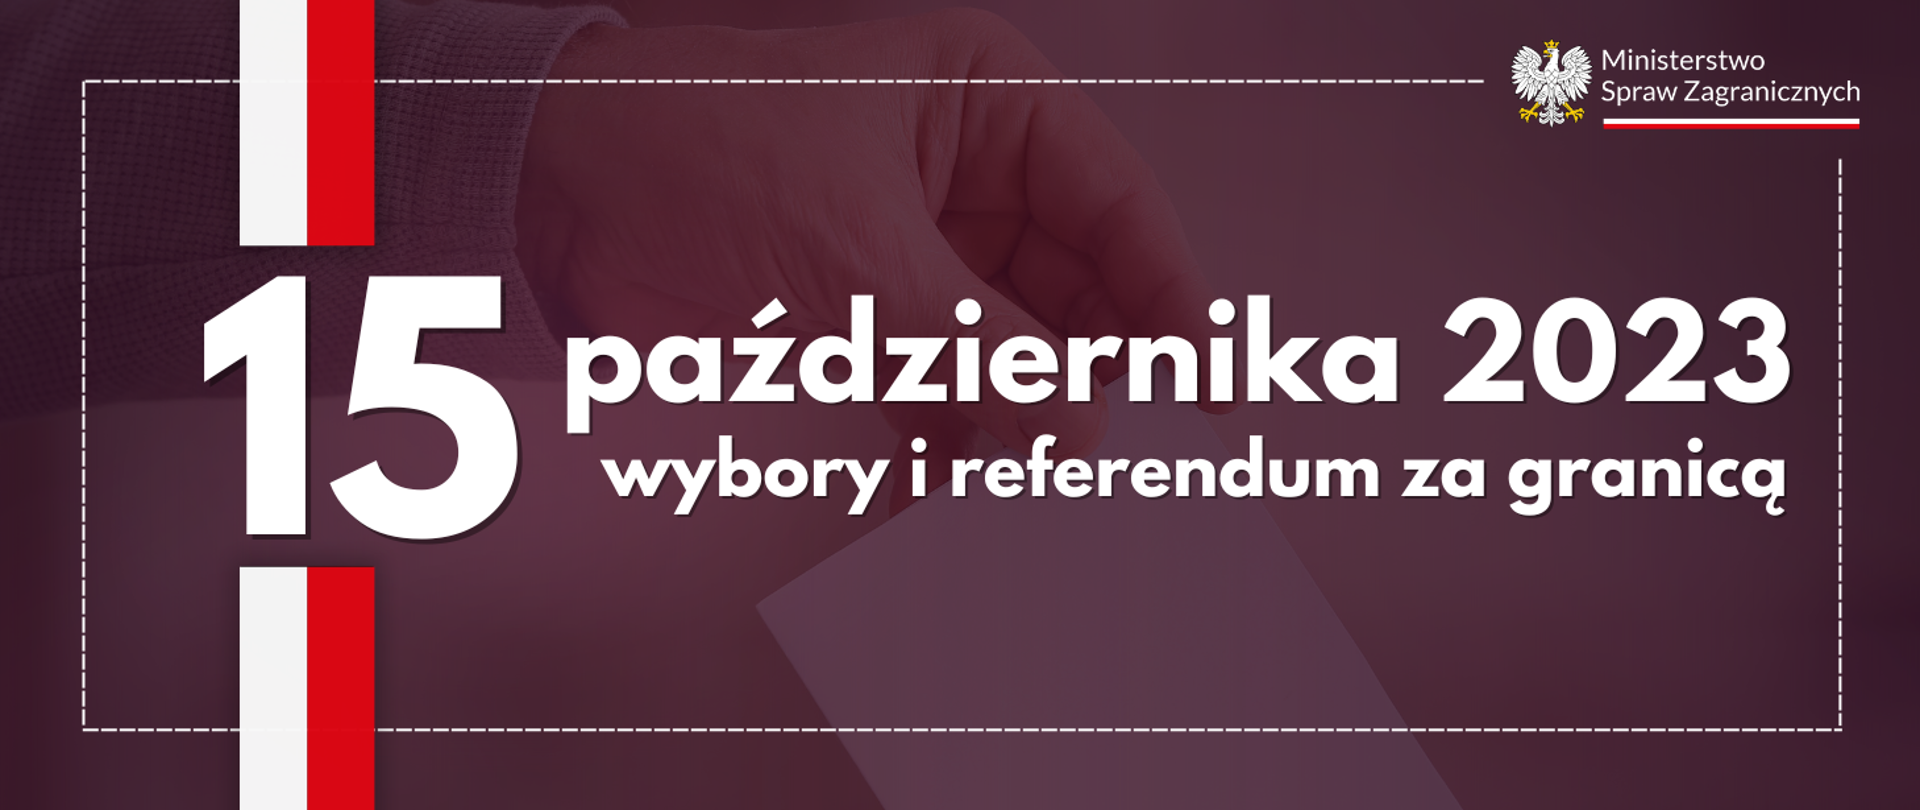 Napis 15 października 2023 wybory i referendum